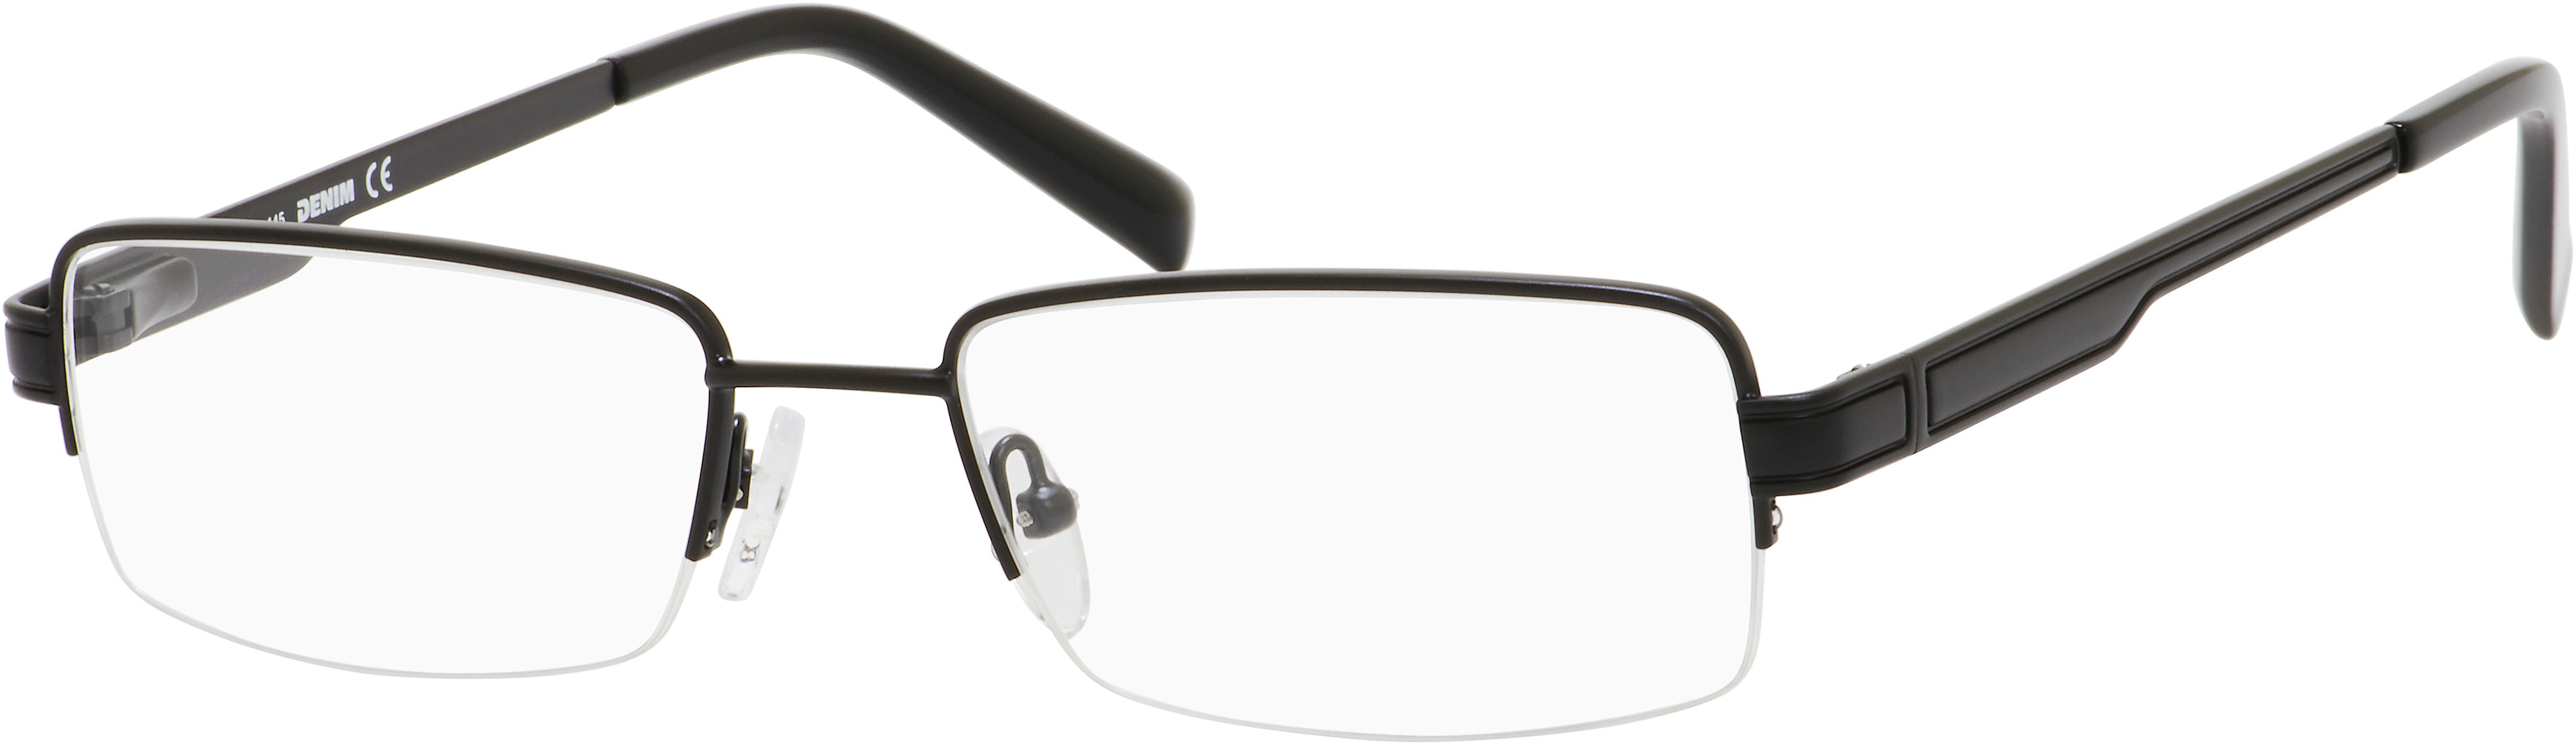  Denim 157 Rectangular Eyeglasses 0003-0003  Matte Black (00 Demo Lens)